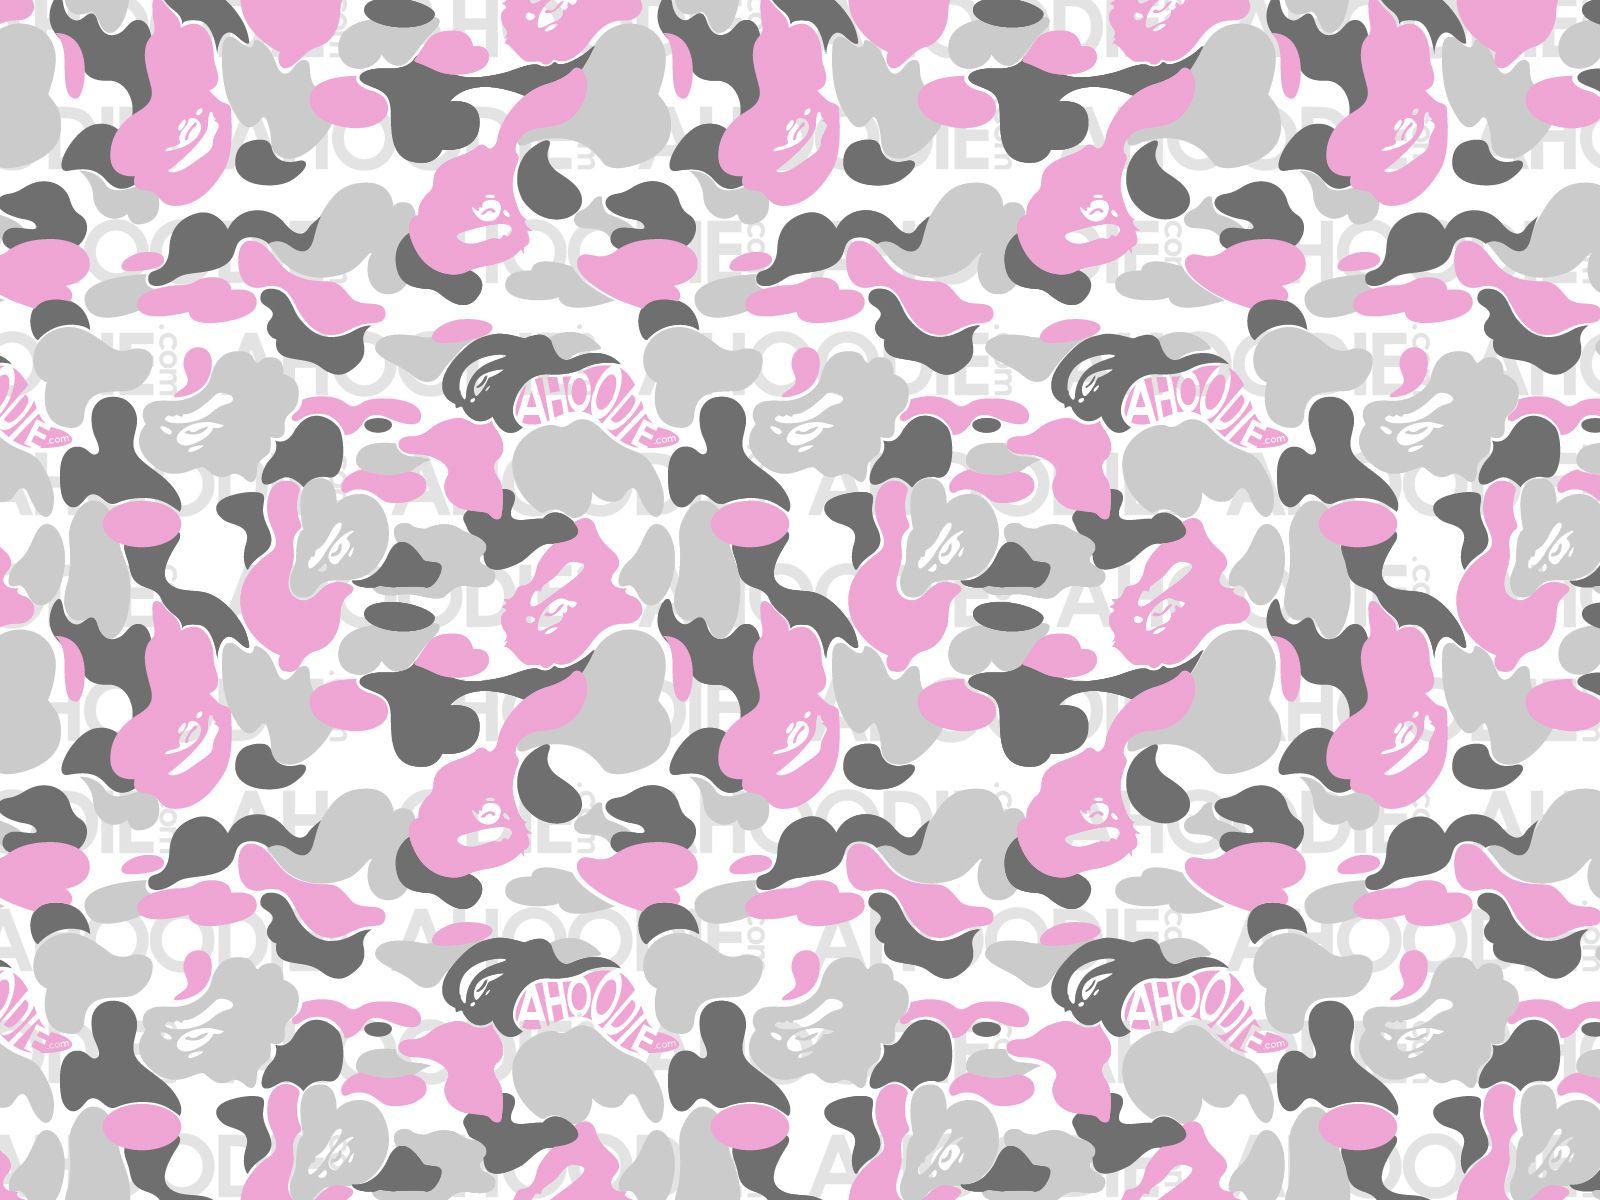 BAPE Pink Camo Logo - Best 58+ A Bathing Ape Wallpaper on HipWallpaper | Steampunk ...